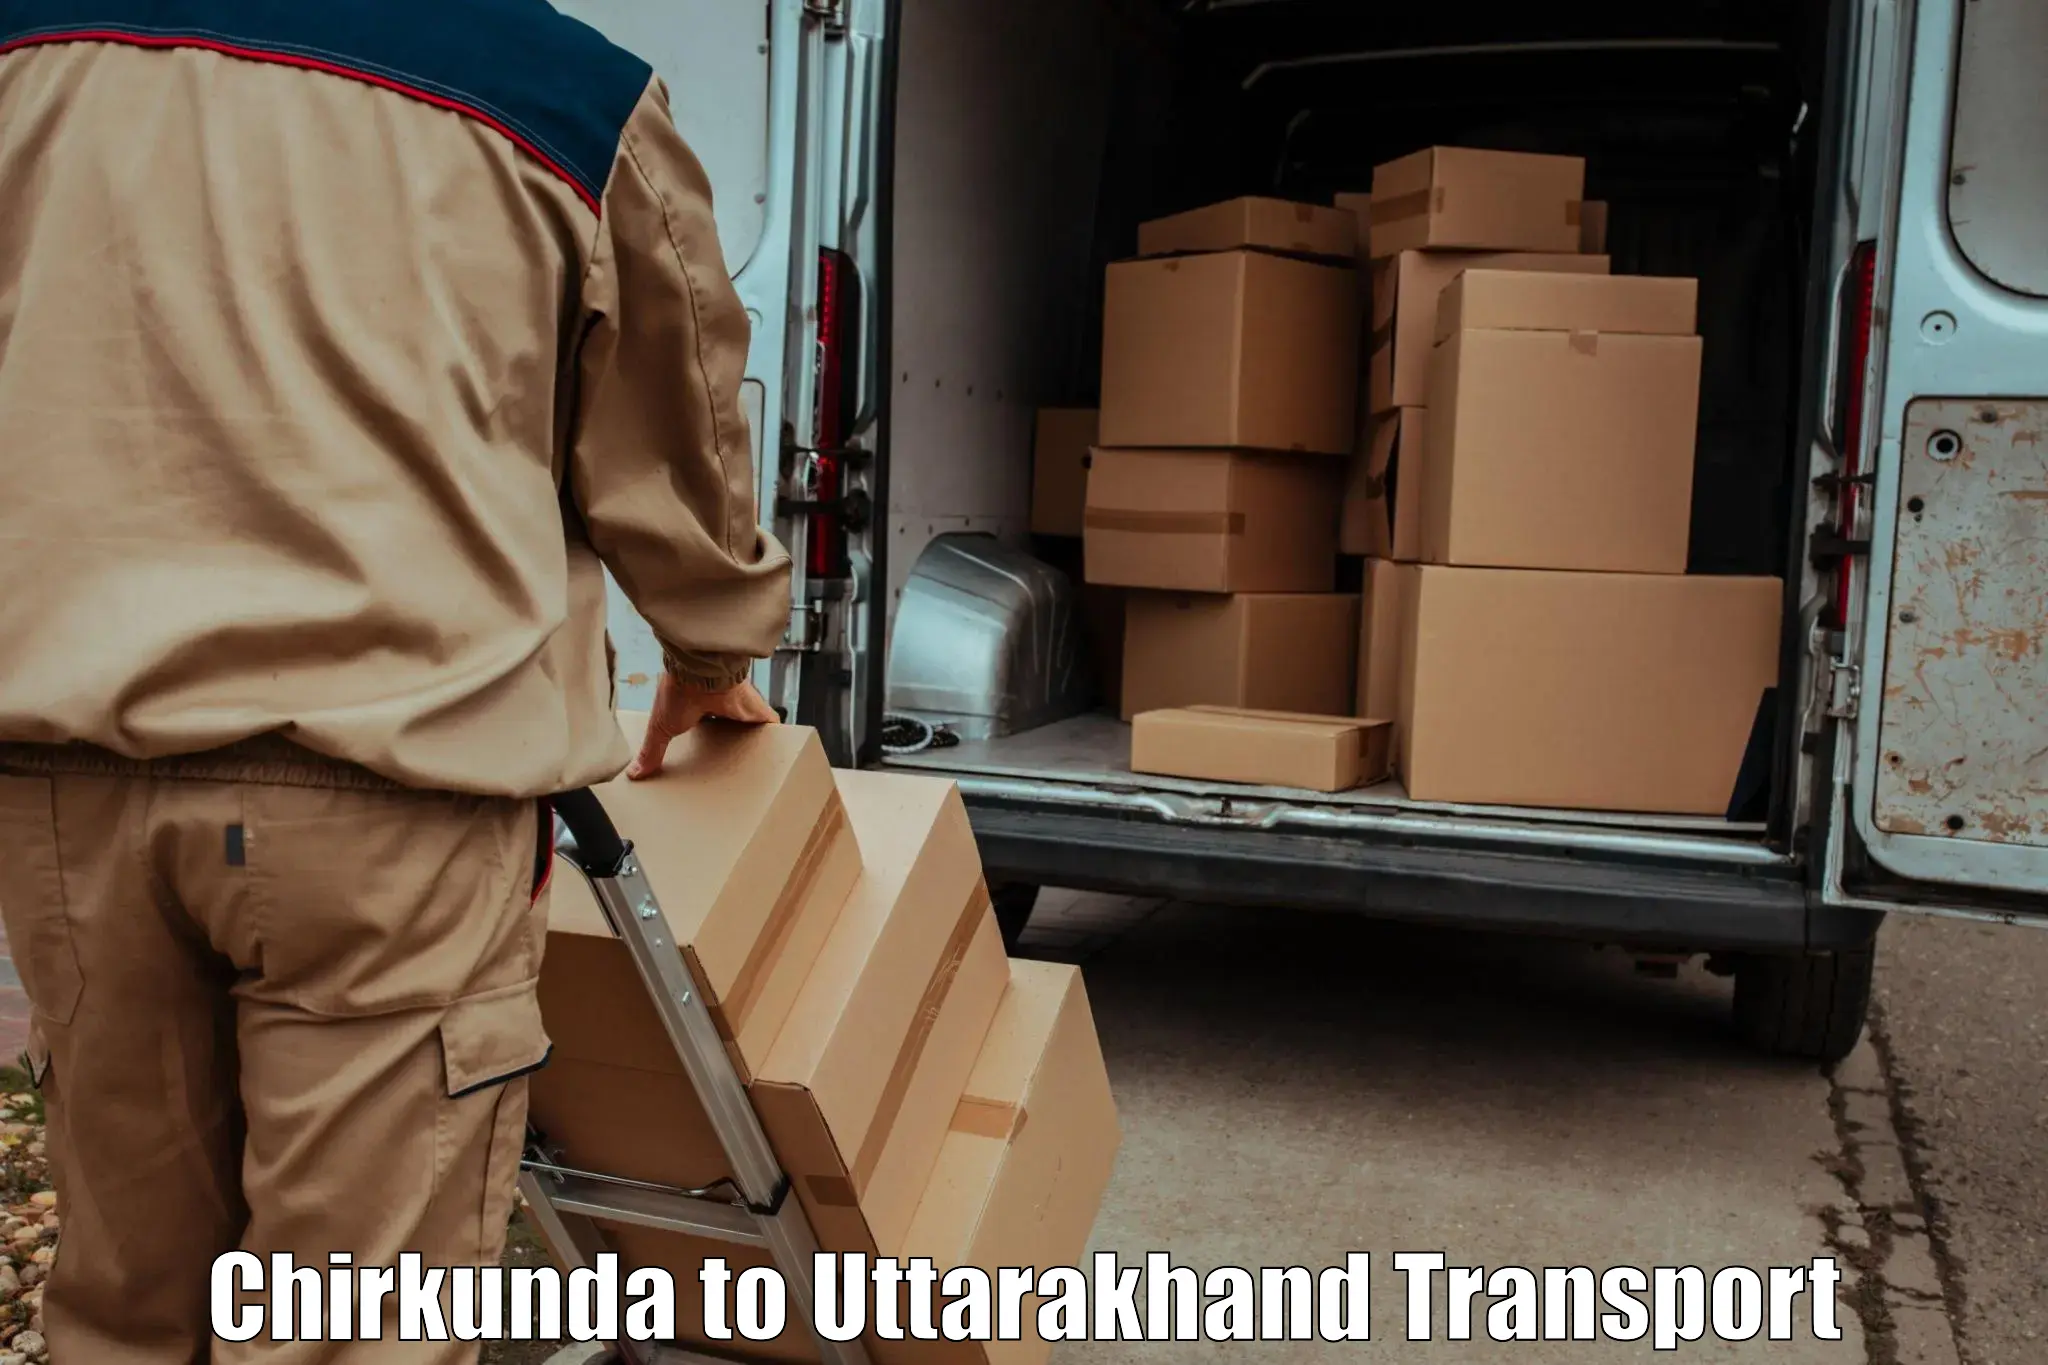 Transport in sharing Chirkunda to Ranikhet